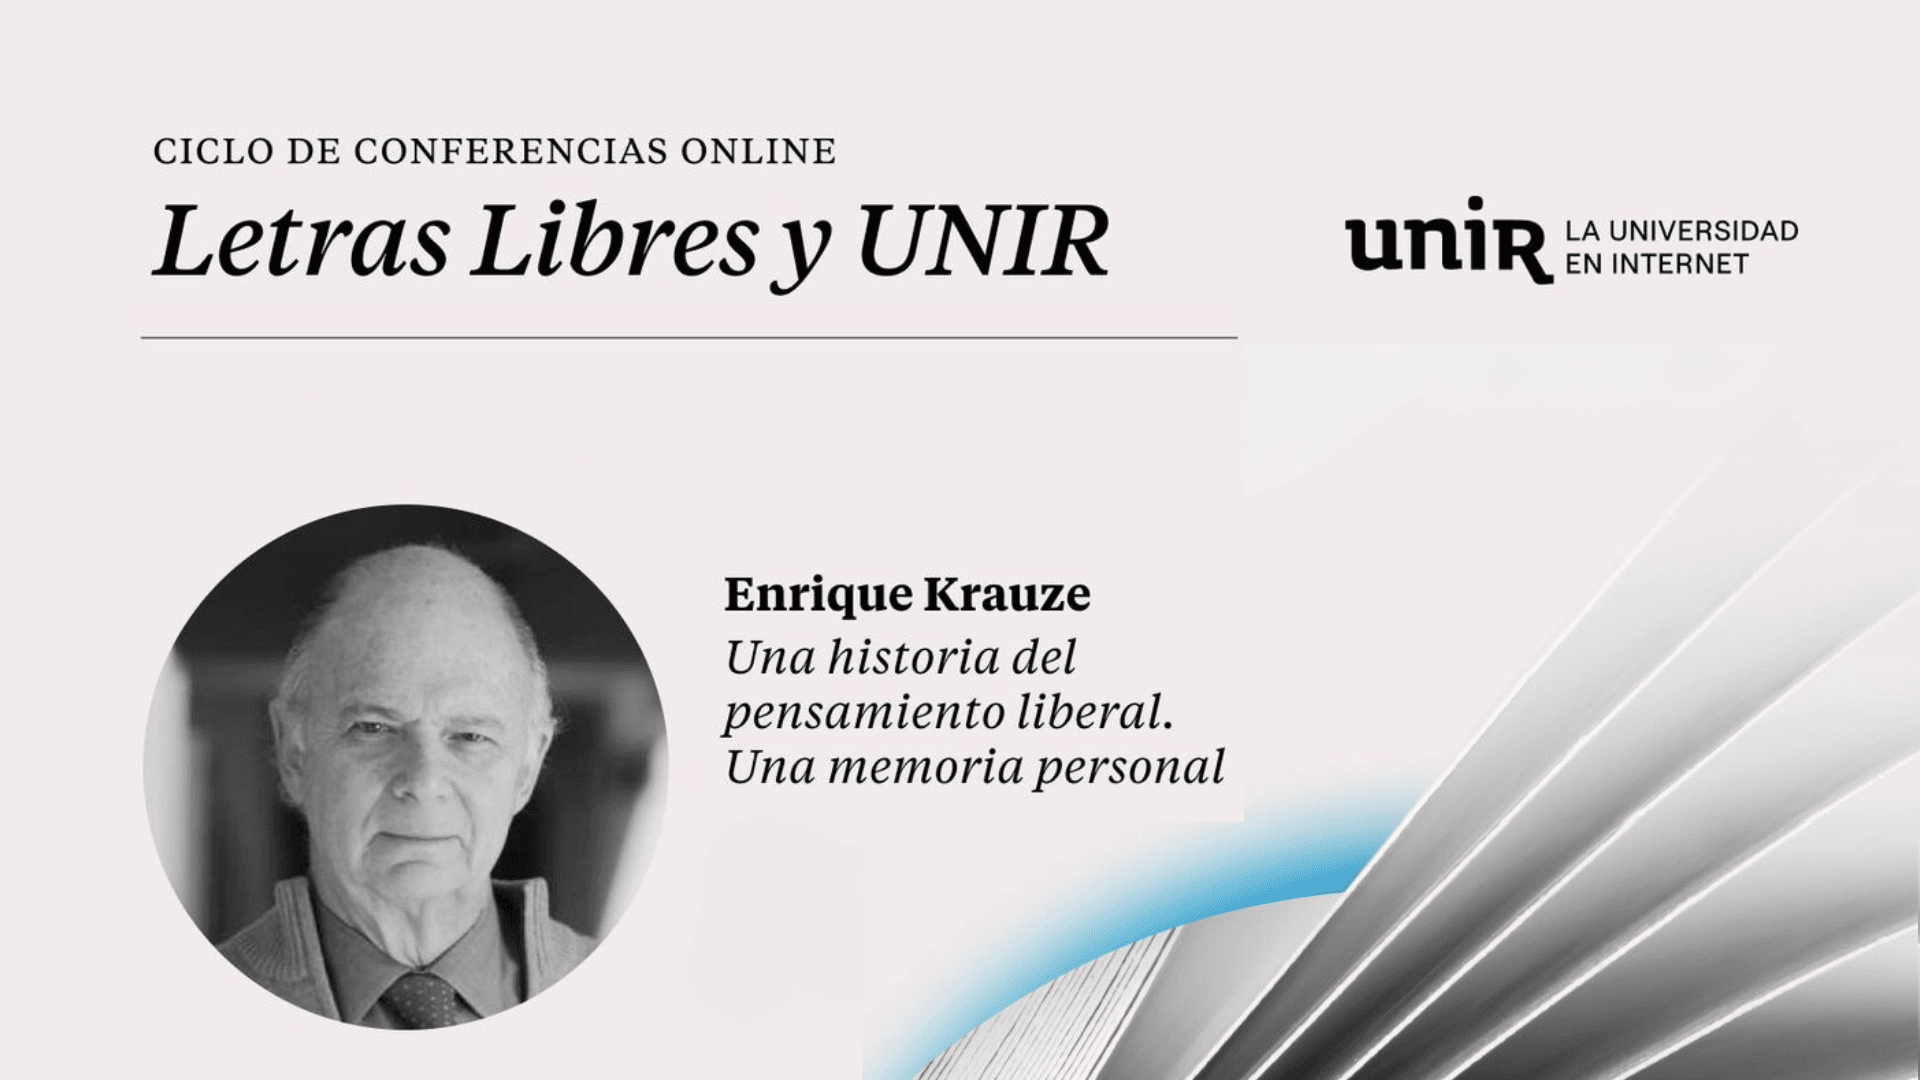 Enrique Krauze UNIR